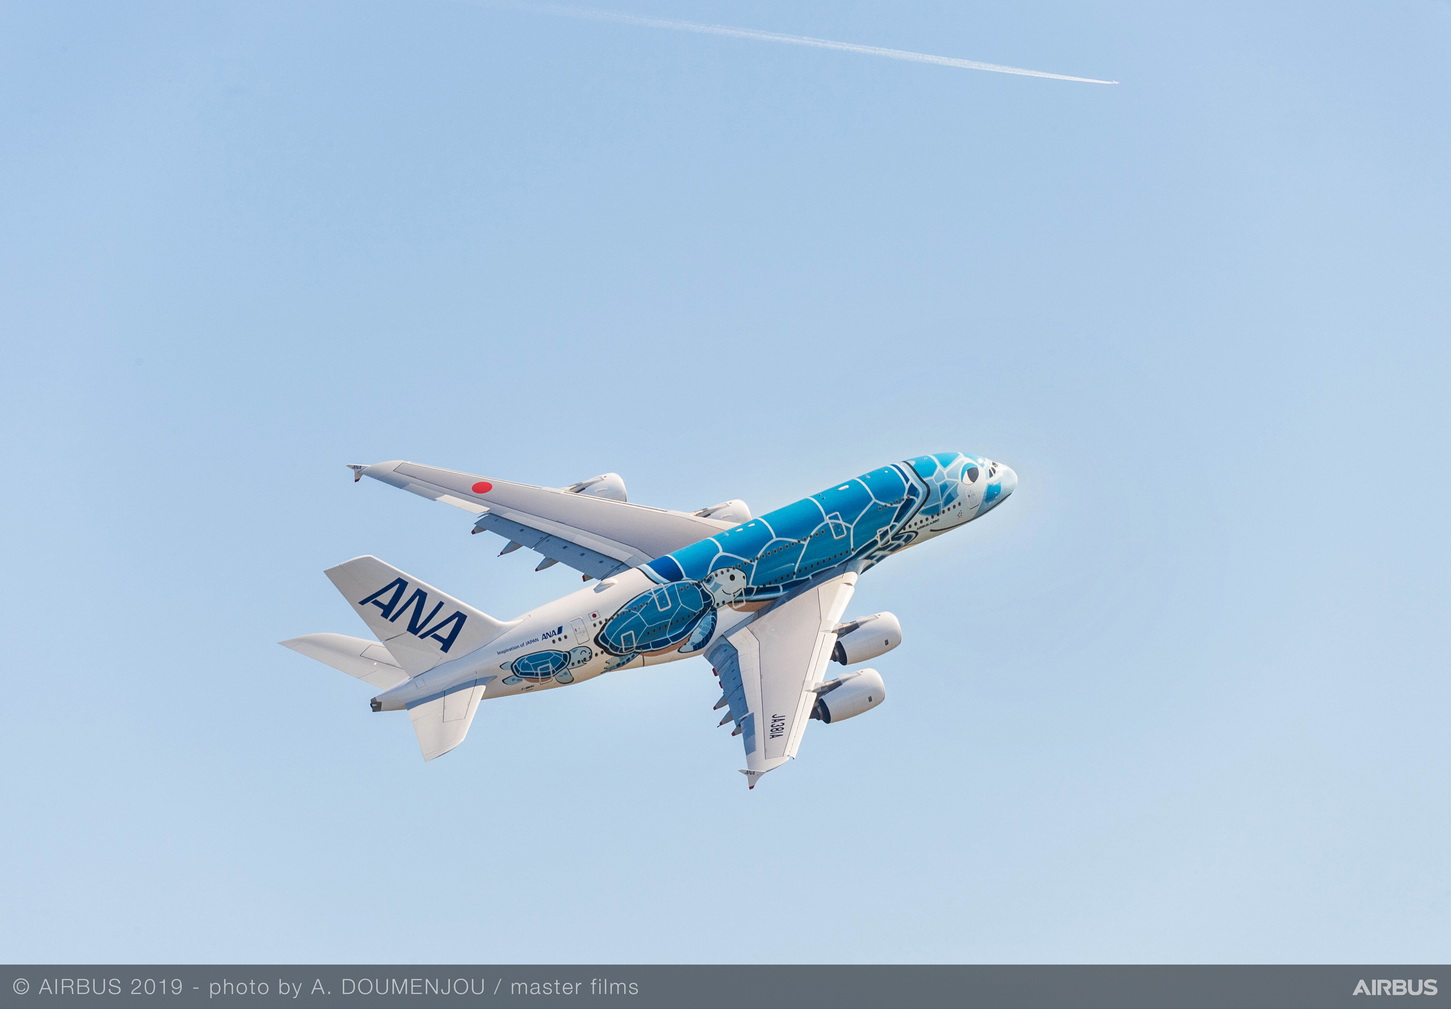  Mỗi chiếc ANA A380 sẽ được trang trí màu sơn đặc biệt mô tả Rùa biển xanh Hawaii, còn được gọi là Honu.